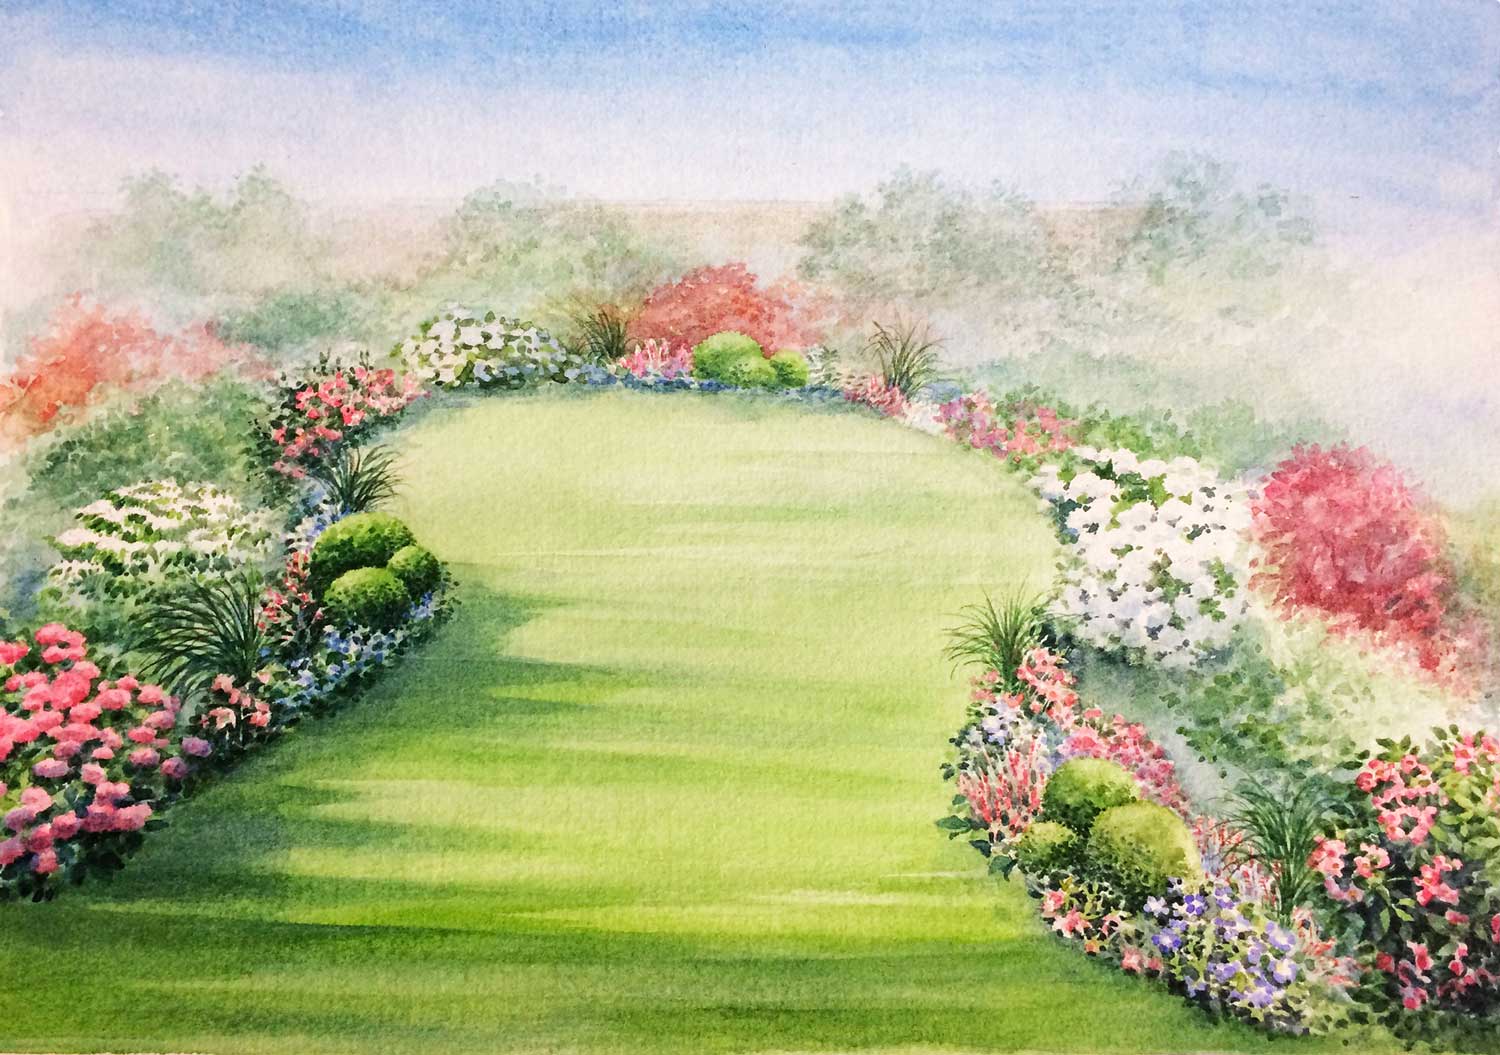 Watercolour of an English garden by Noelle Le Guillouzic